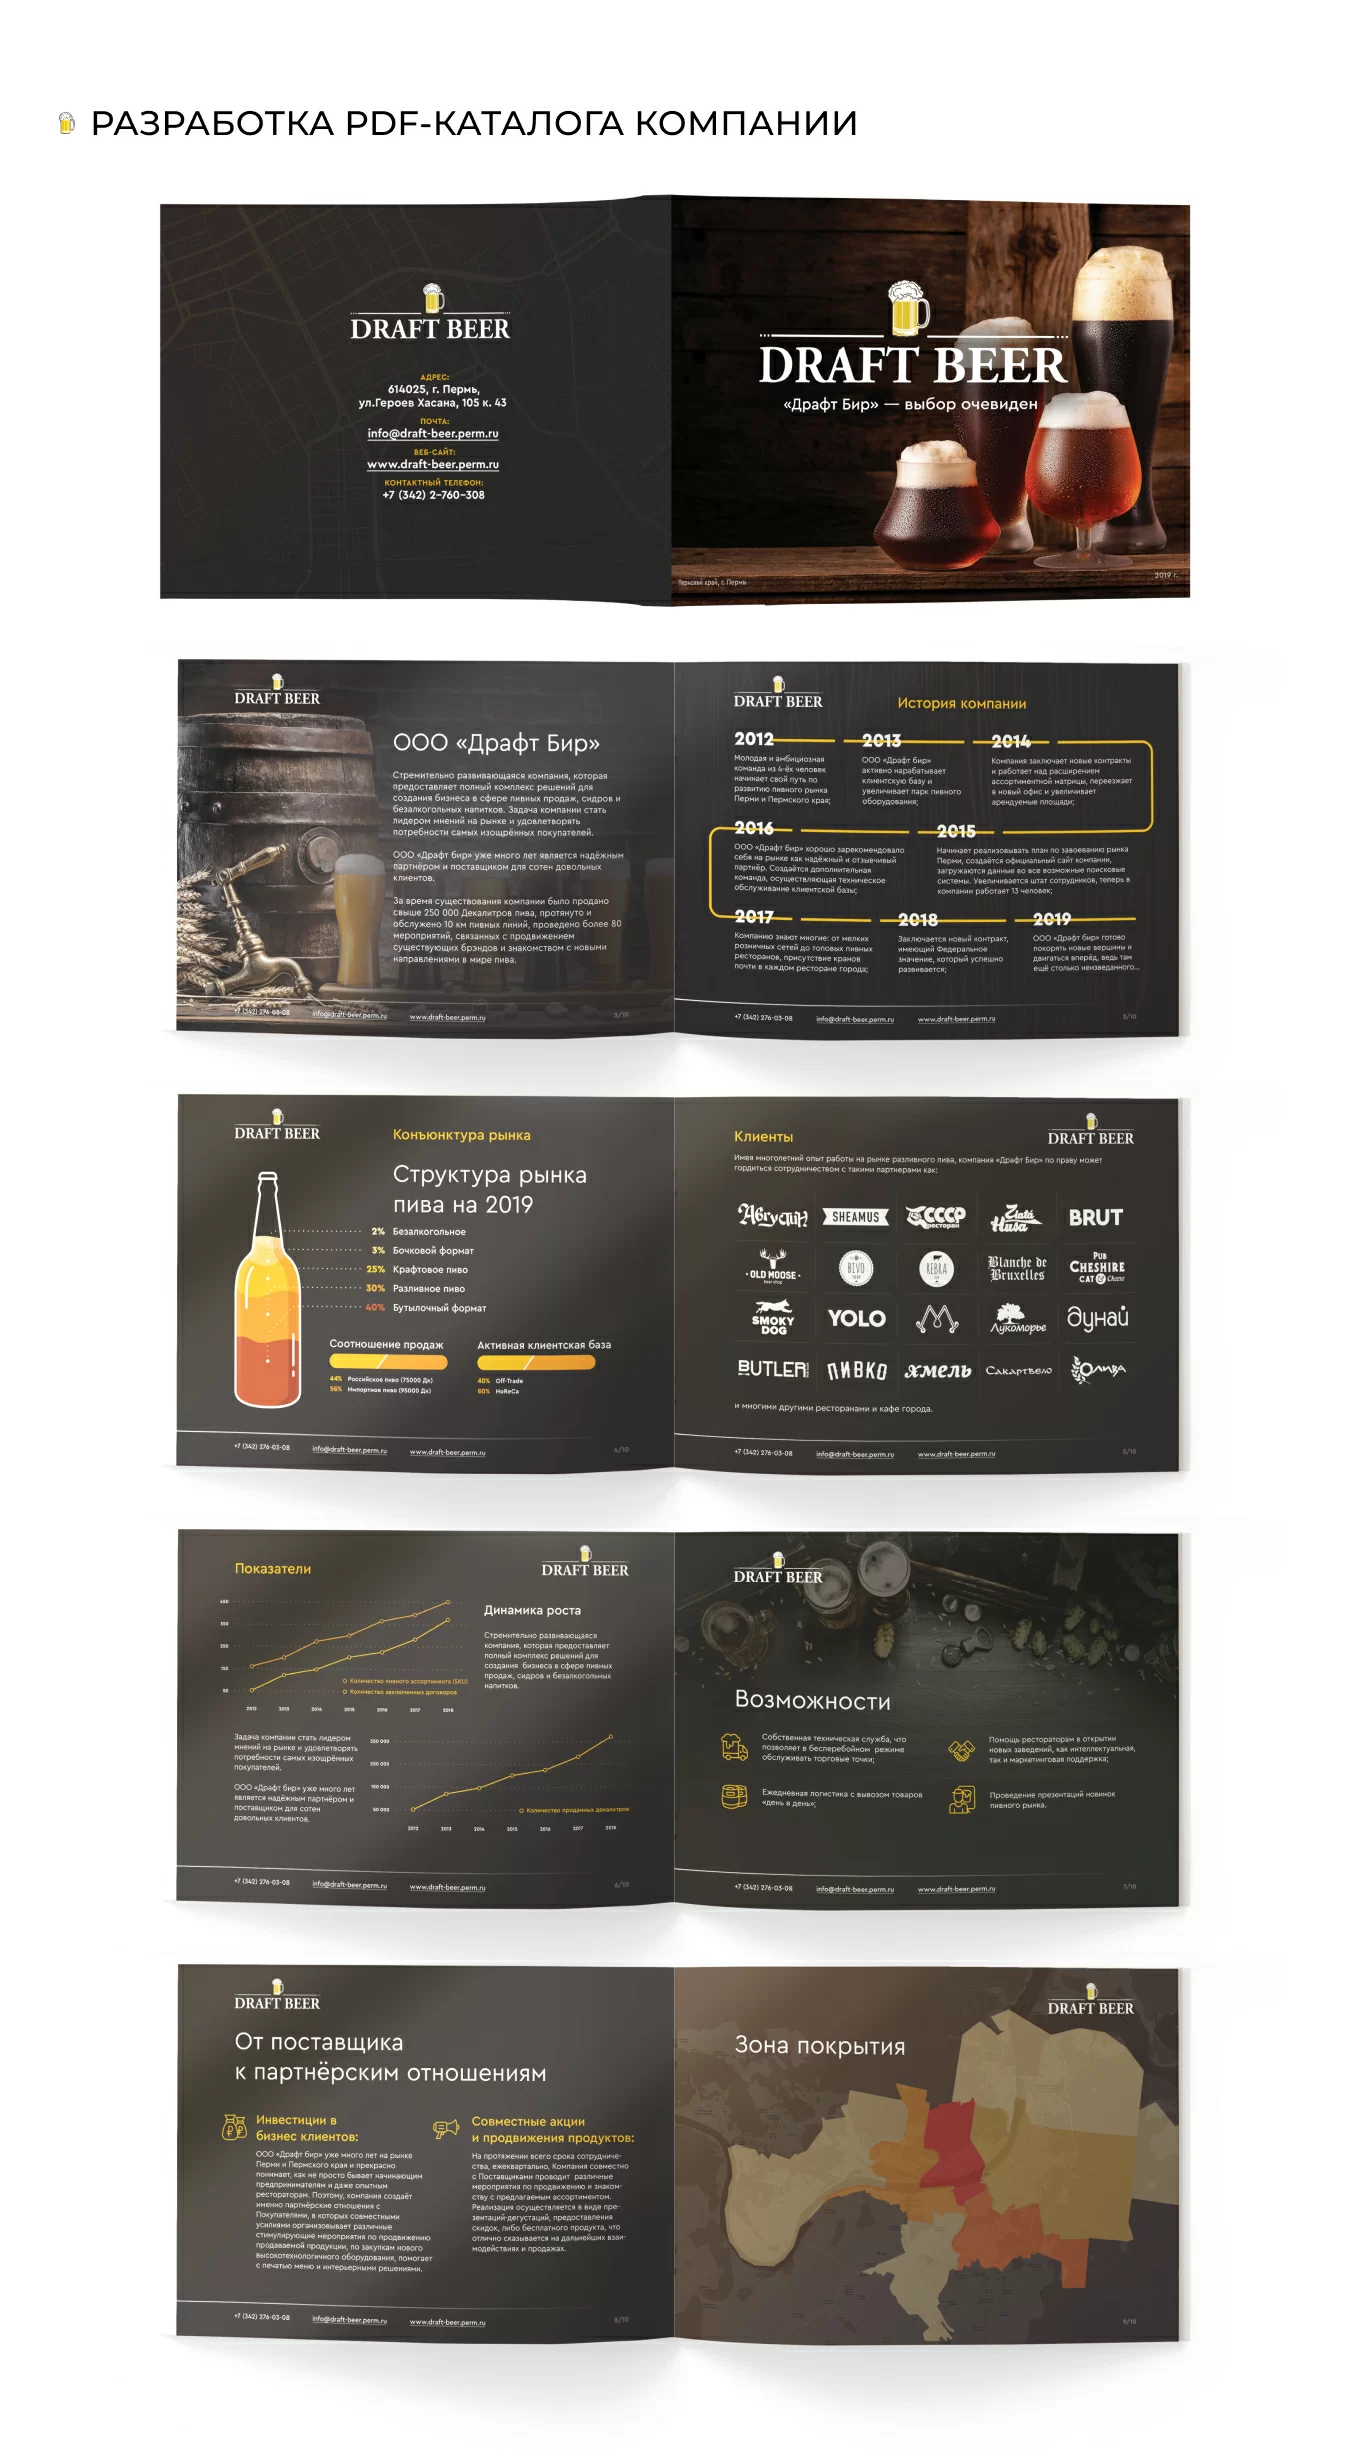 Разработка pdf-каталога ООО «Драфт бир» — продажа пива оптом в Перми